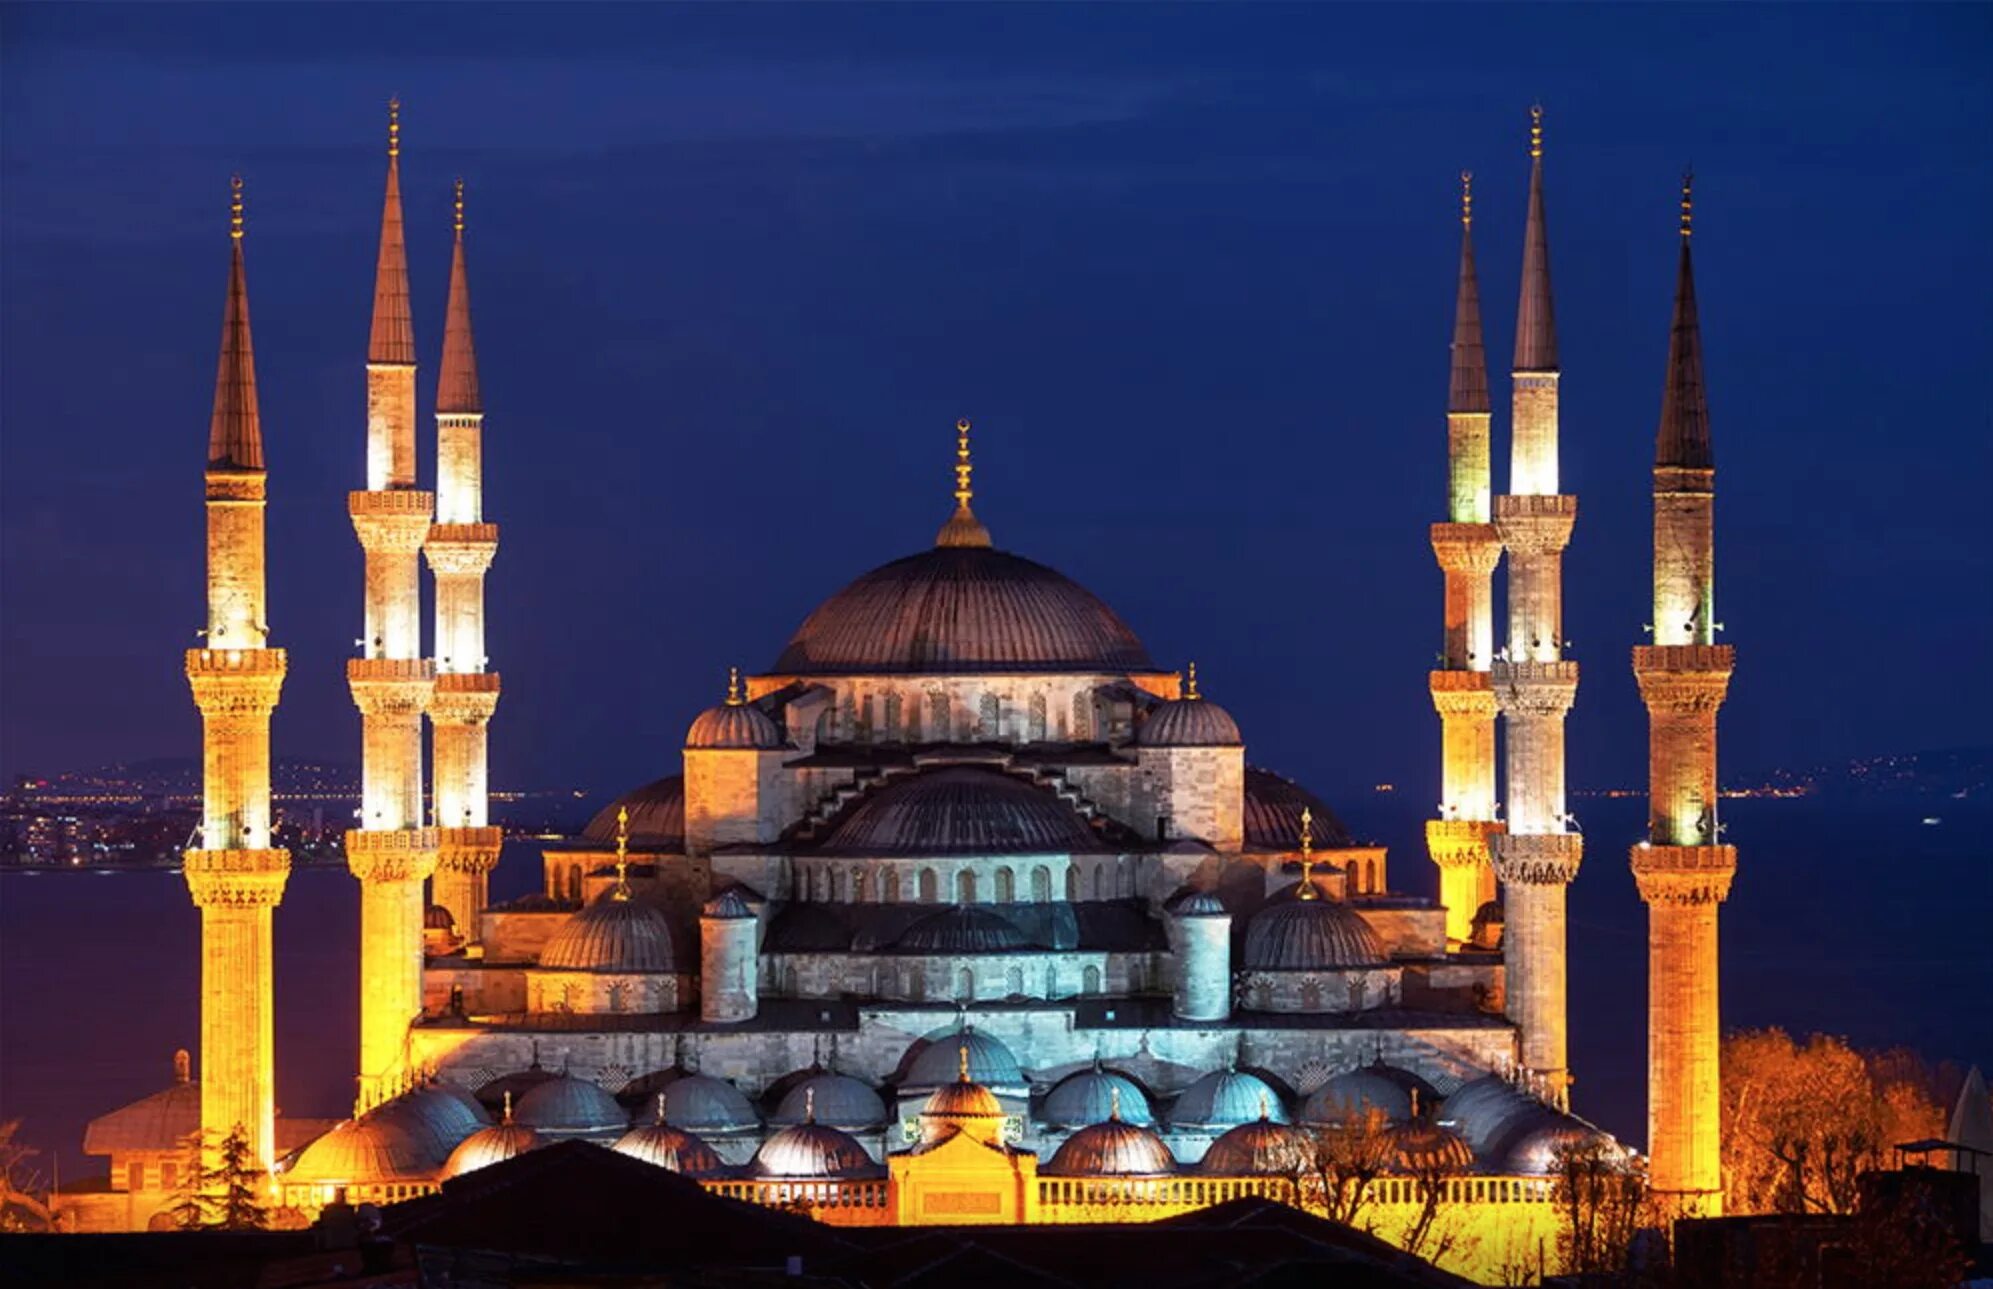 Голубая мечеть Турция Стамбул. Турция достопримечательности Стамбула голубая мечеть. Мечеть Султана Ахмеда. Голубая мечеть (мечеть Султанахмет).